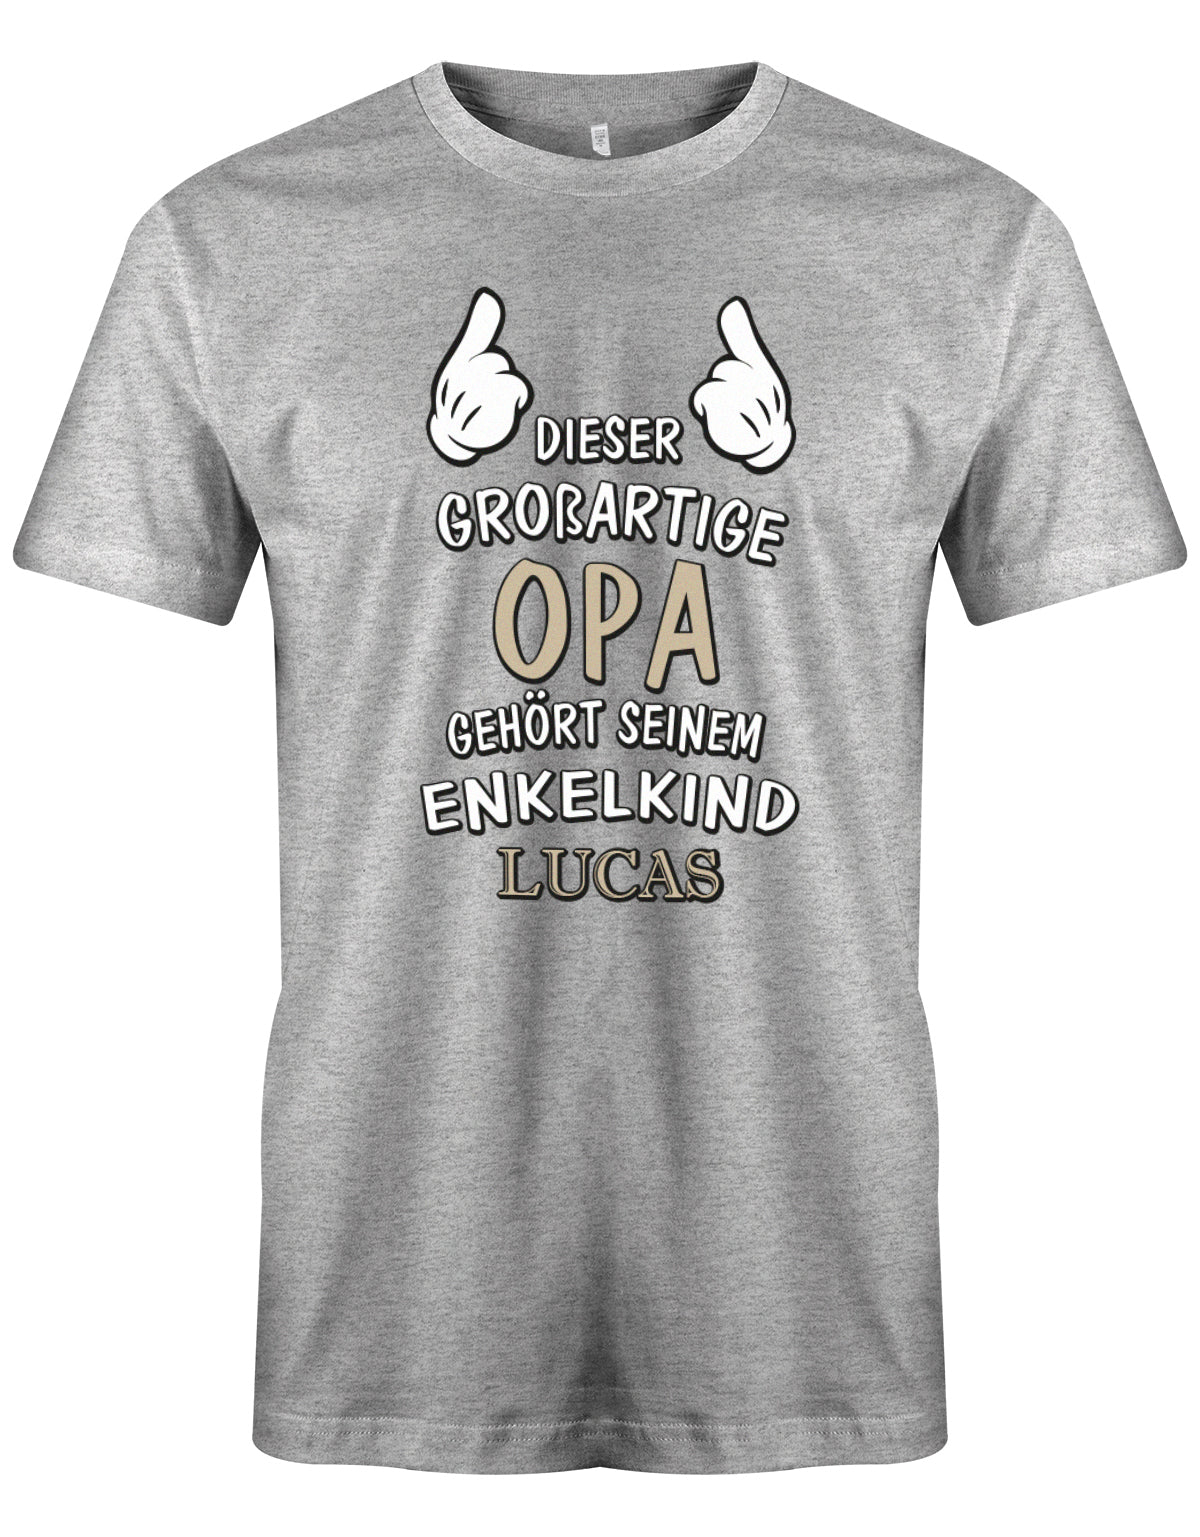 Opa Shirt personalisiert - Dieser großartige Opa gehört seinen Enkelkind. Mit Namen vom Enkelkind. Grau